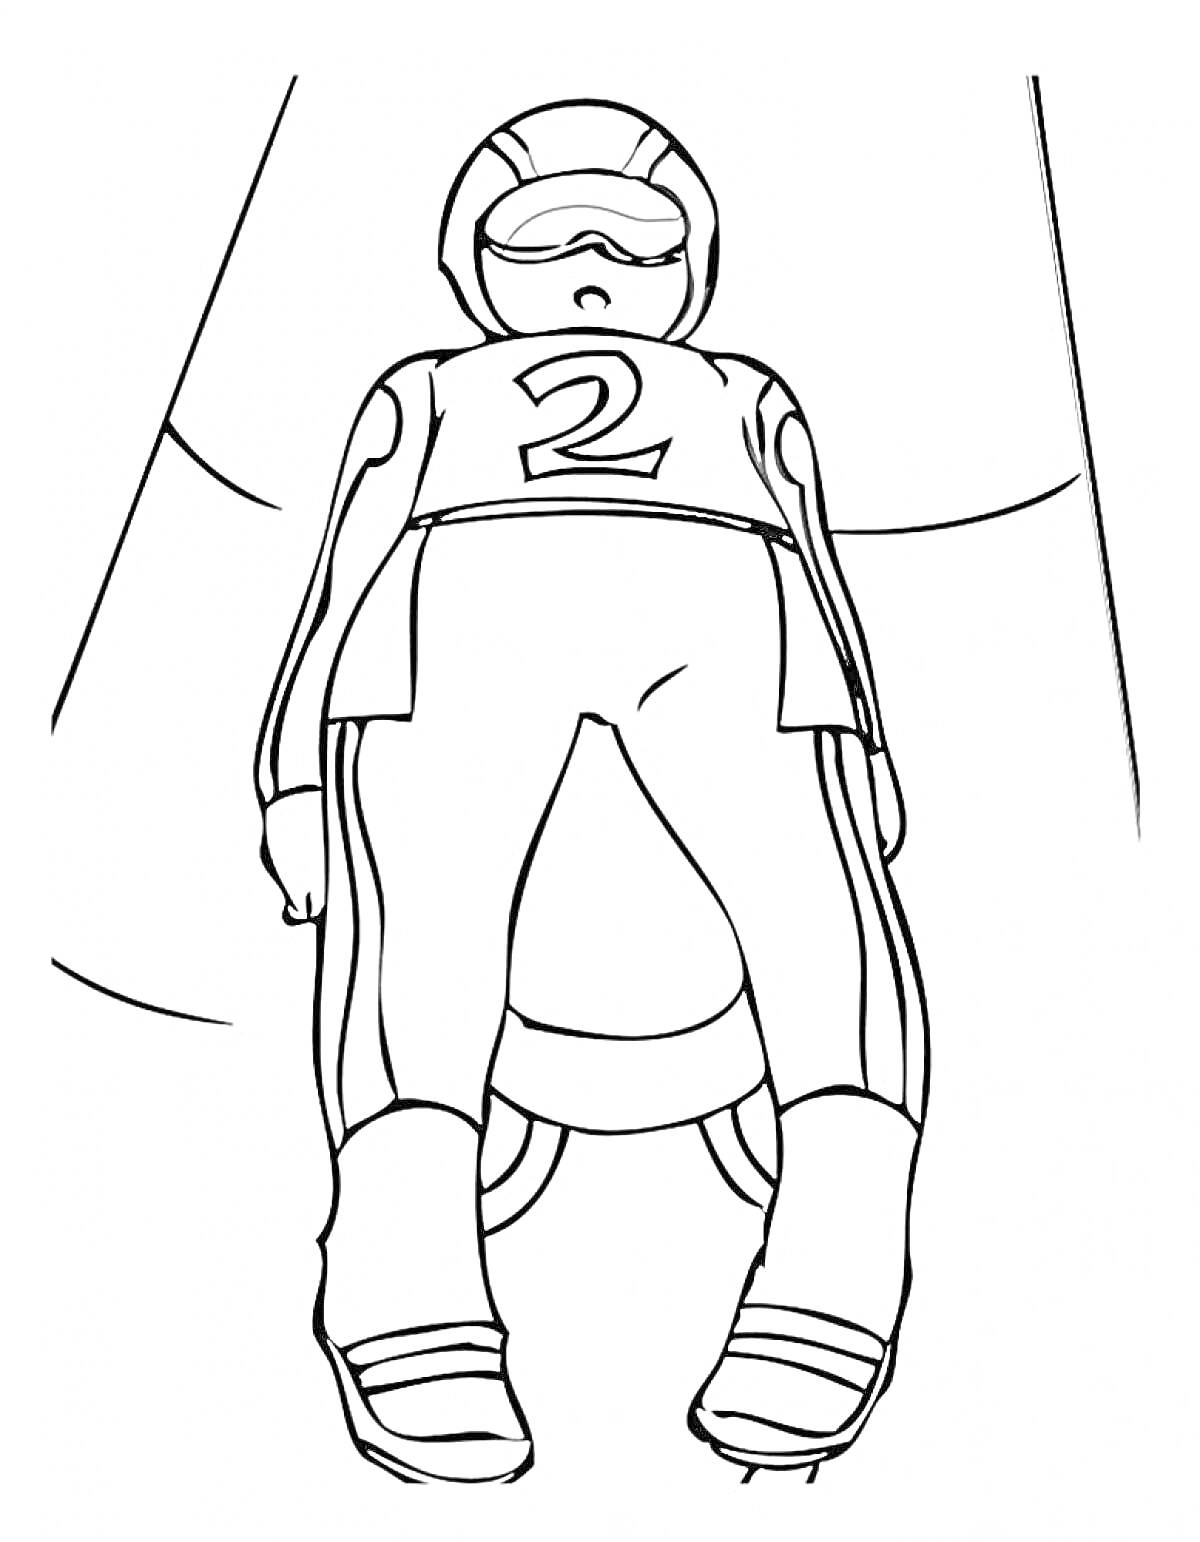 Спортсмен на санном спорте, лежащий на санях, с номером 2, в защитном шлеме и спортивном костюме